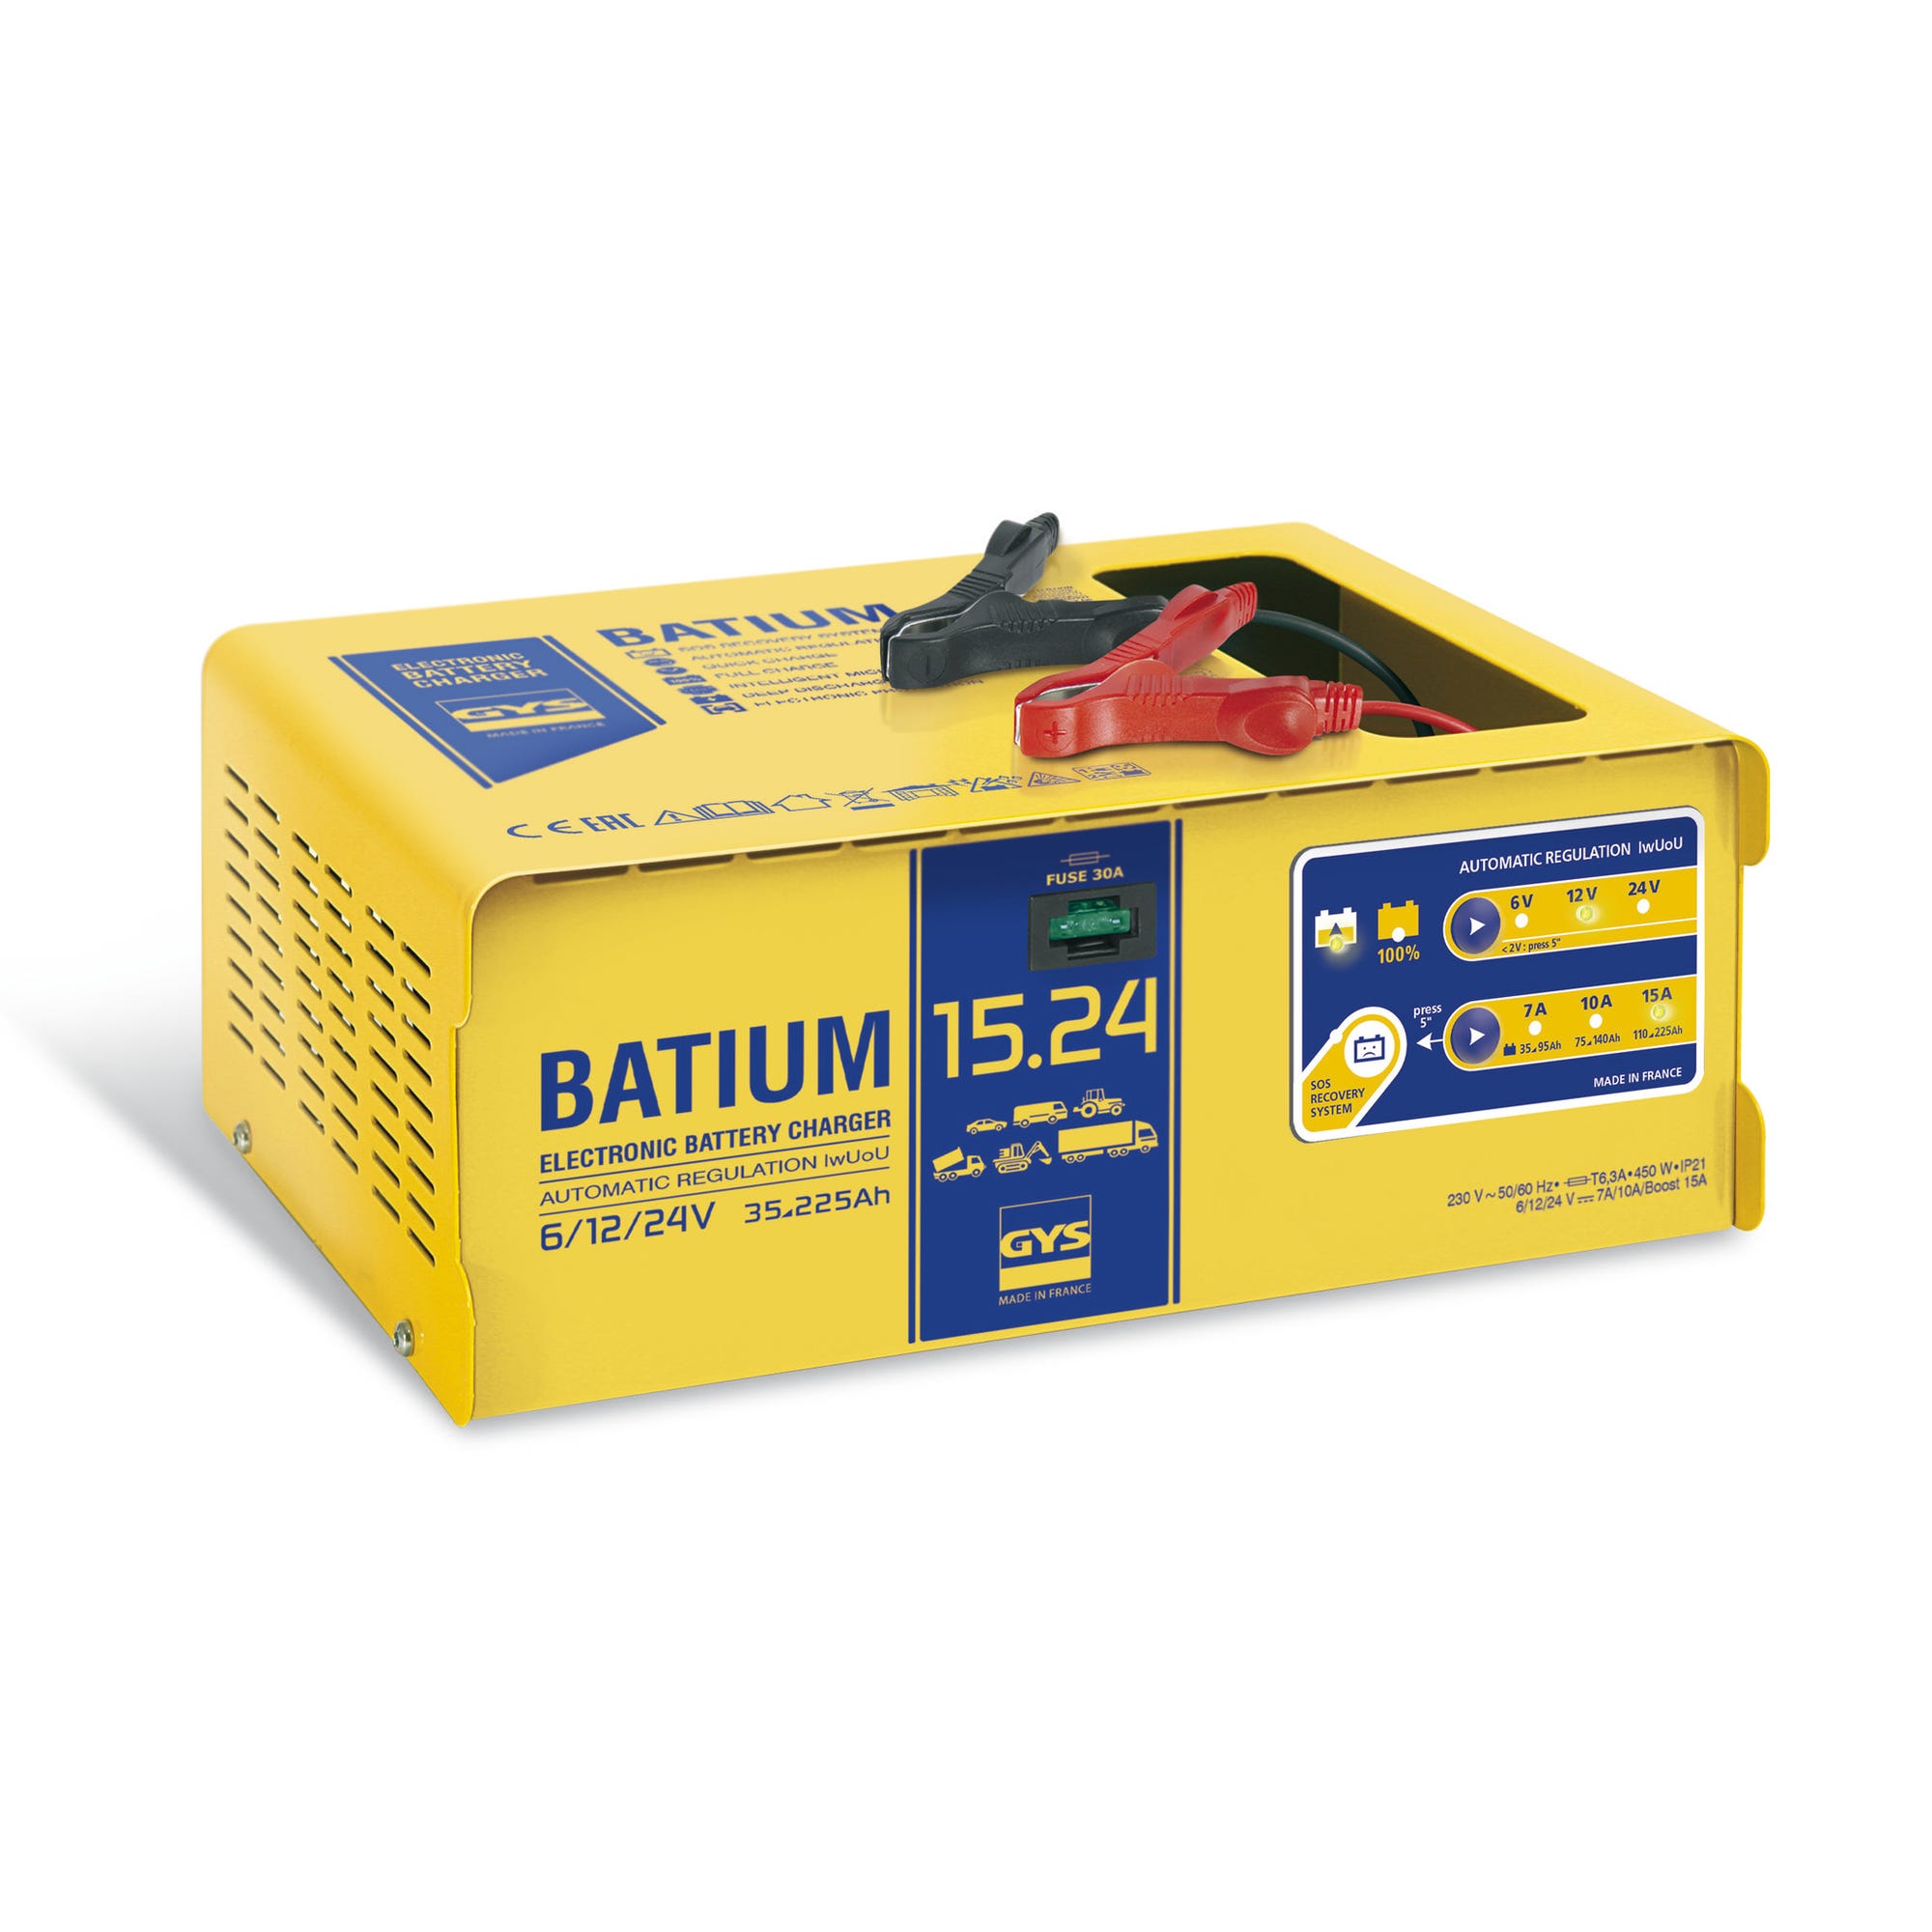 Chargeur batterie automatique 35 à 225ah Batium 15.24 Gys 0